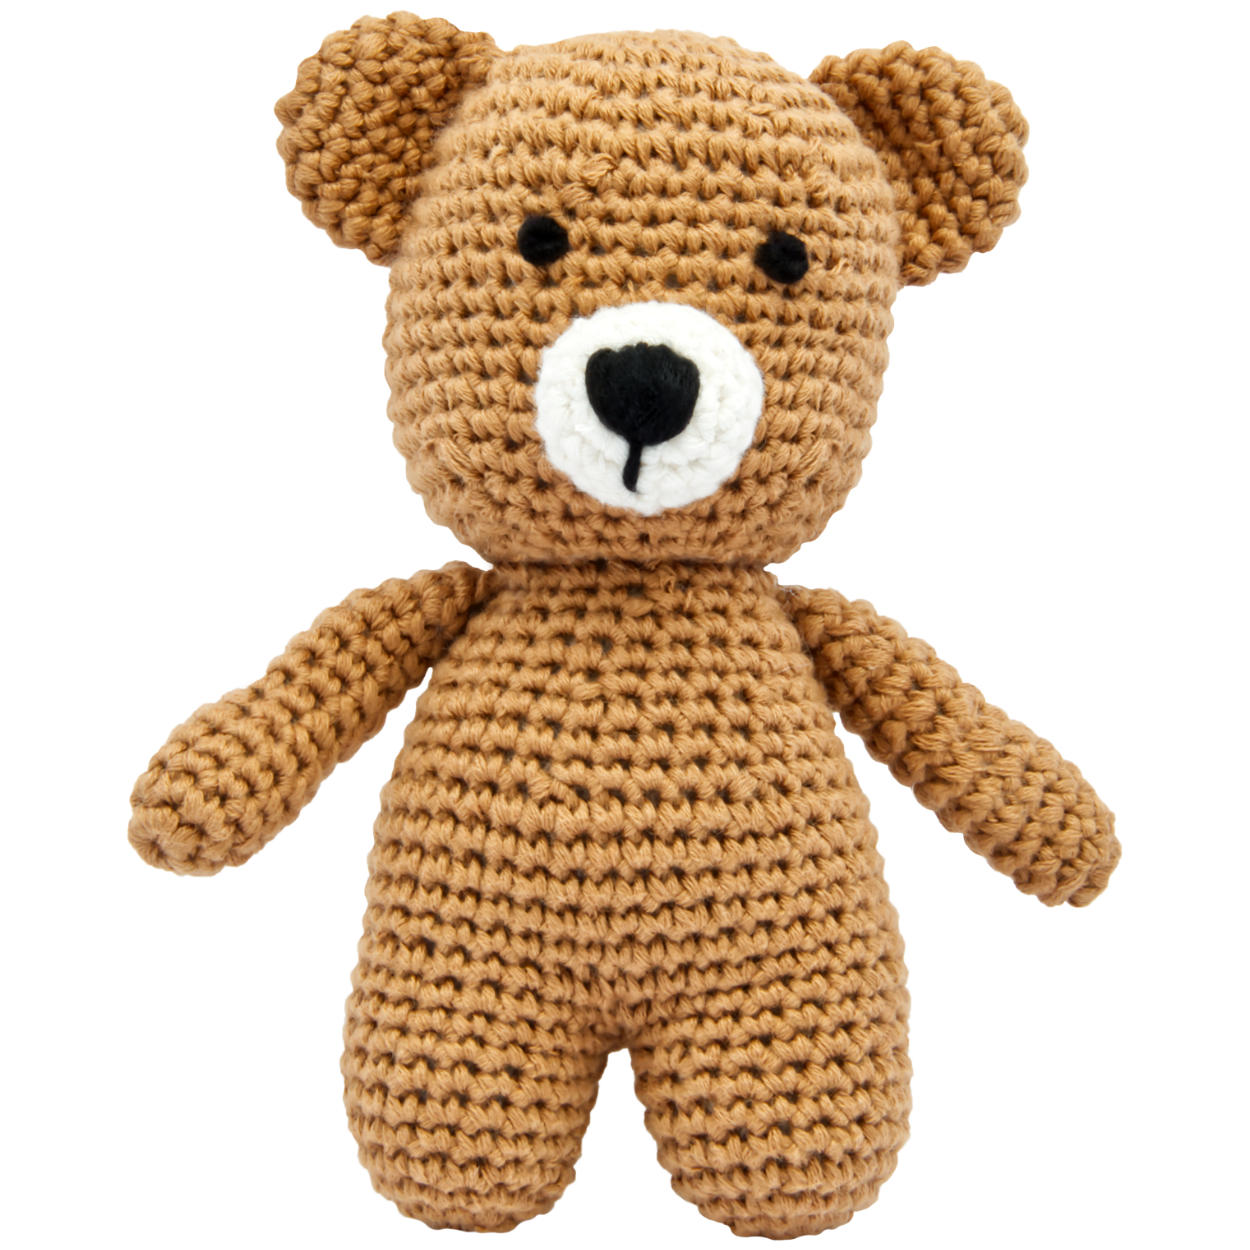 Handgestrickter Bär gehäkelt aus Baumwolle Spielzeug 15 cm